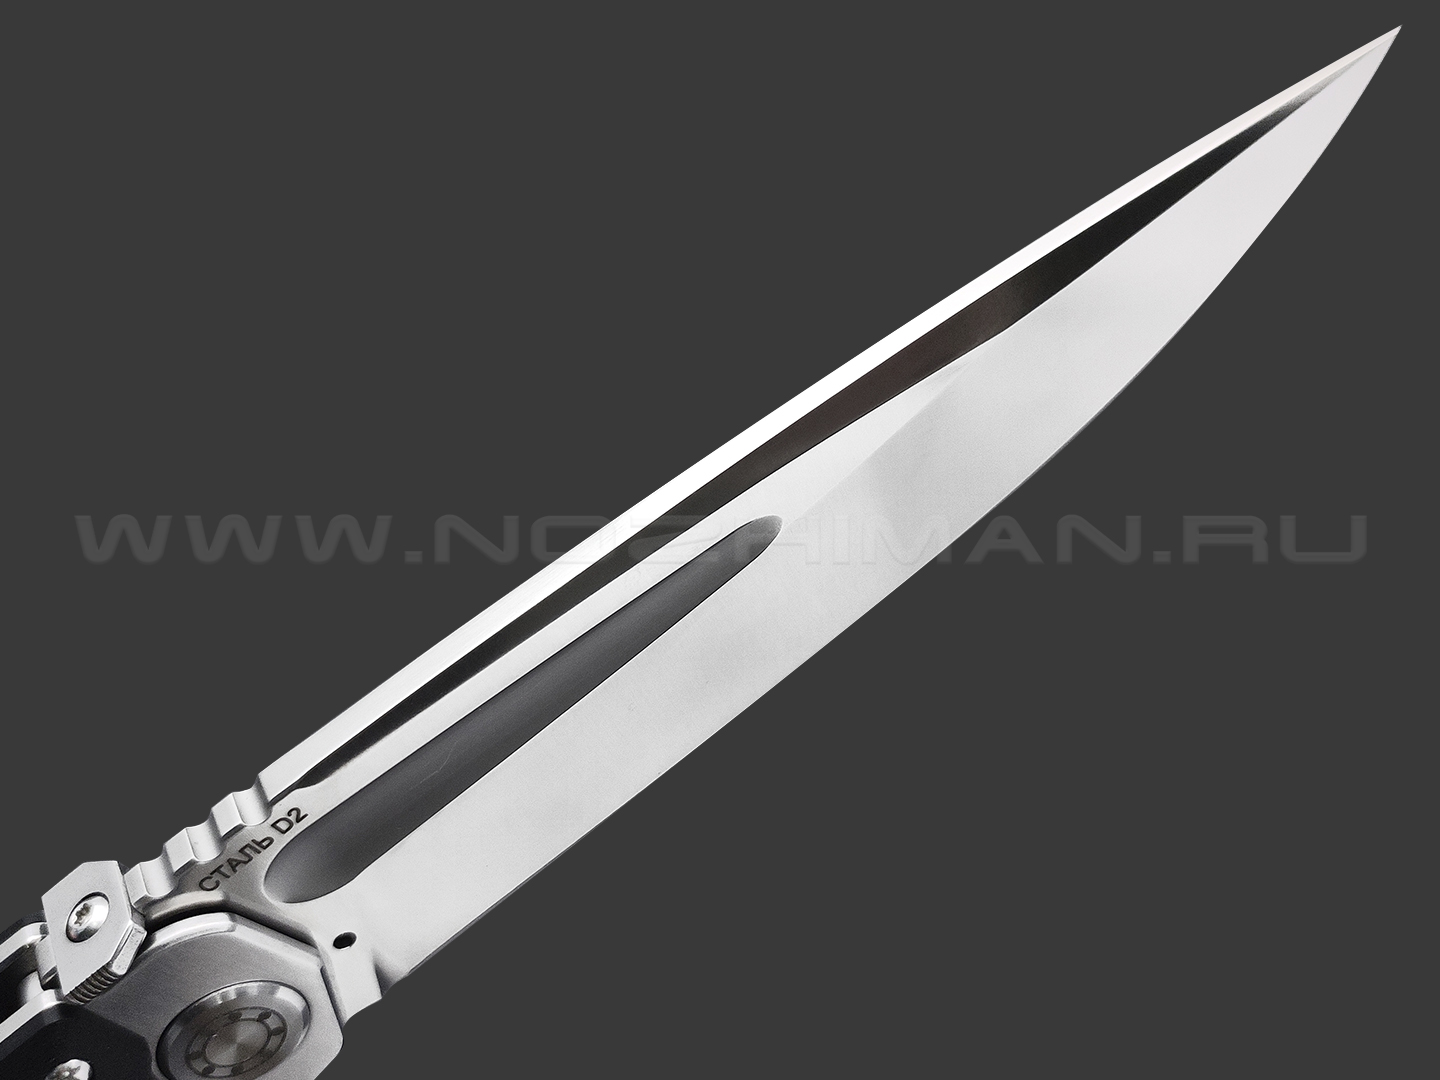 Нокс складной нож Кугуар 332-100406 сталь D2 satin, рукоять G10 black